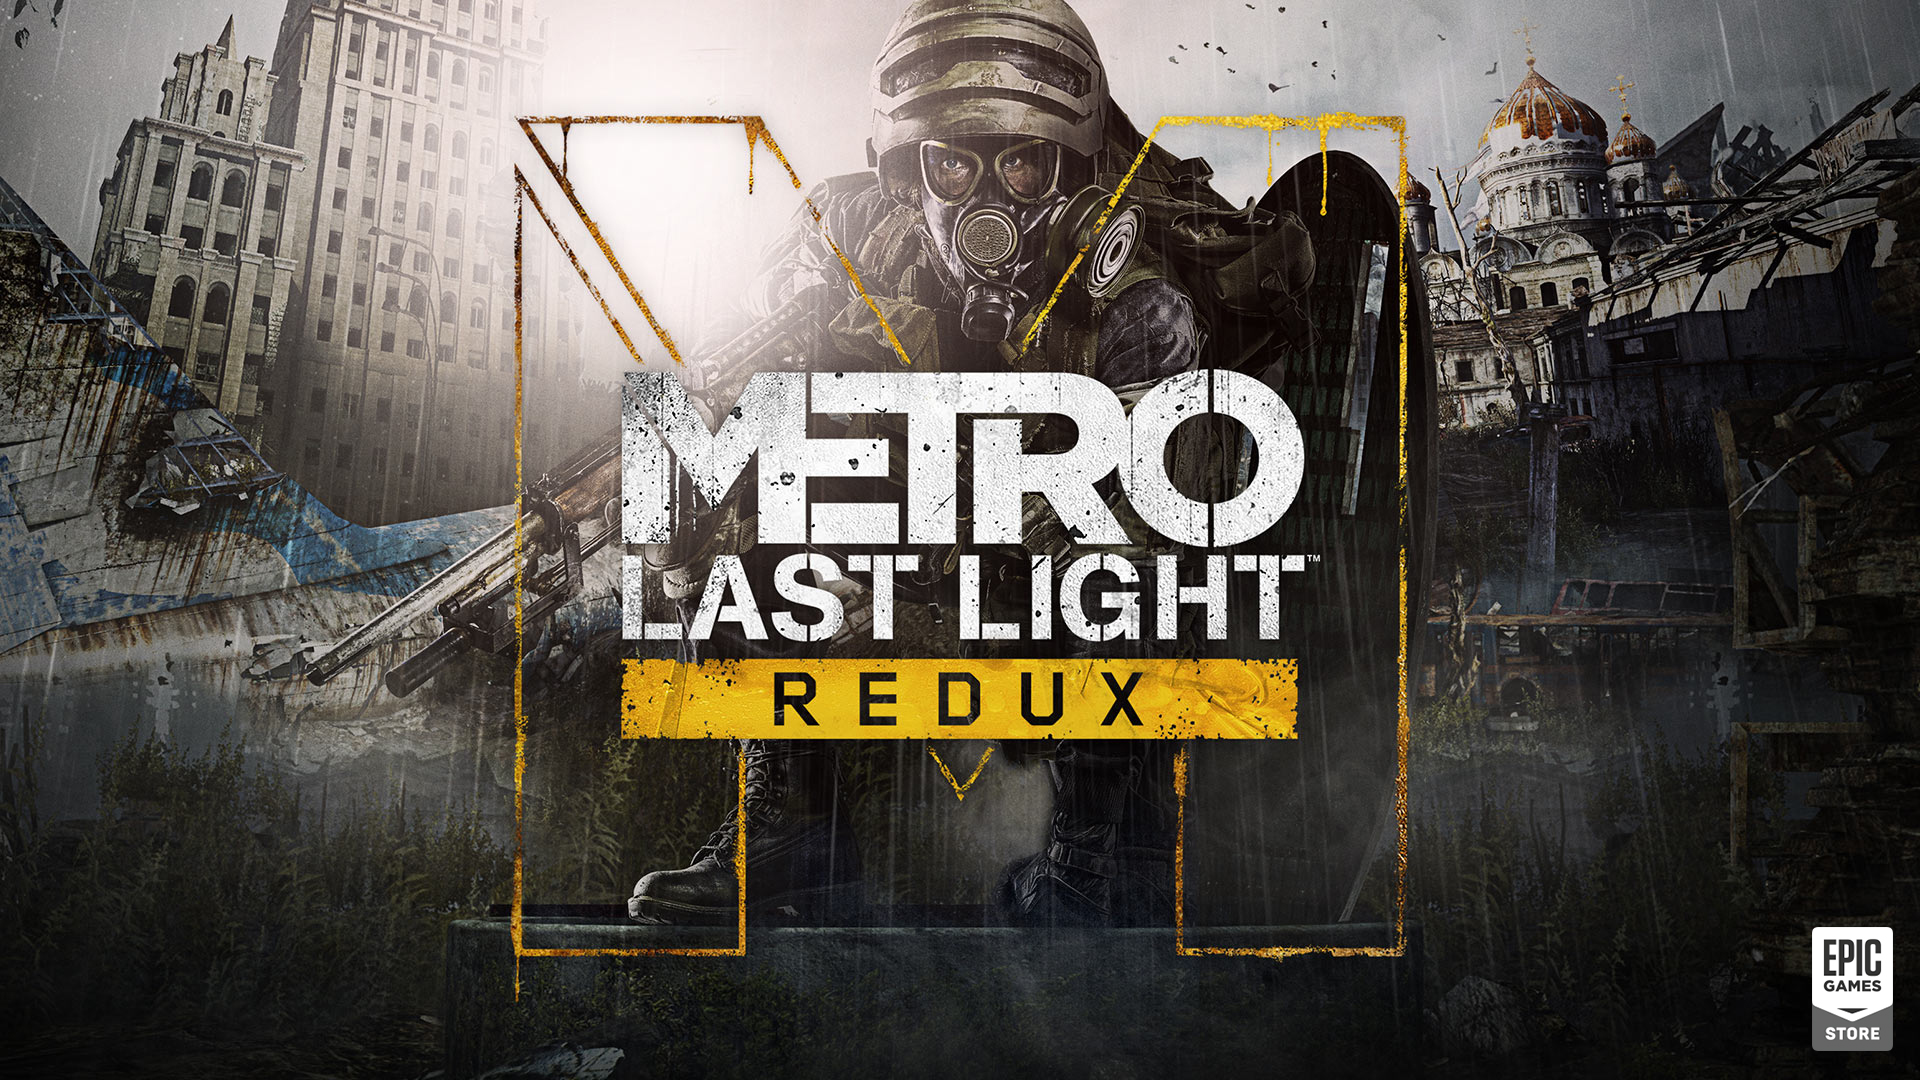 Metro Last Light Redux é o Décimo Jogo Gratuito na Epic Games